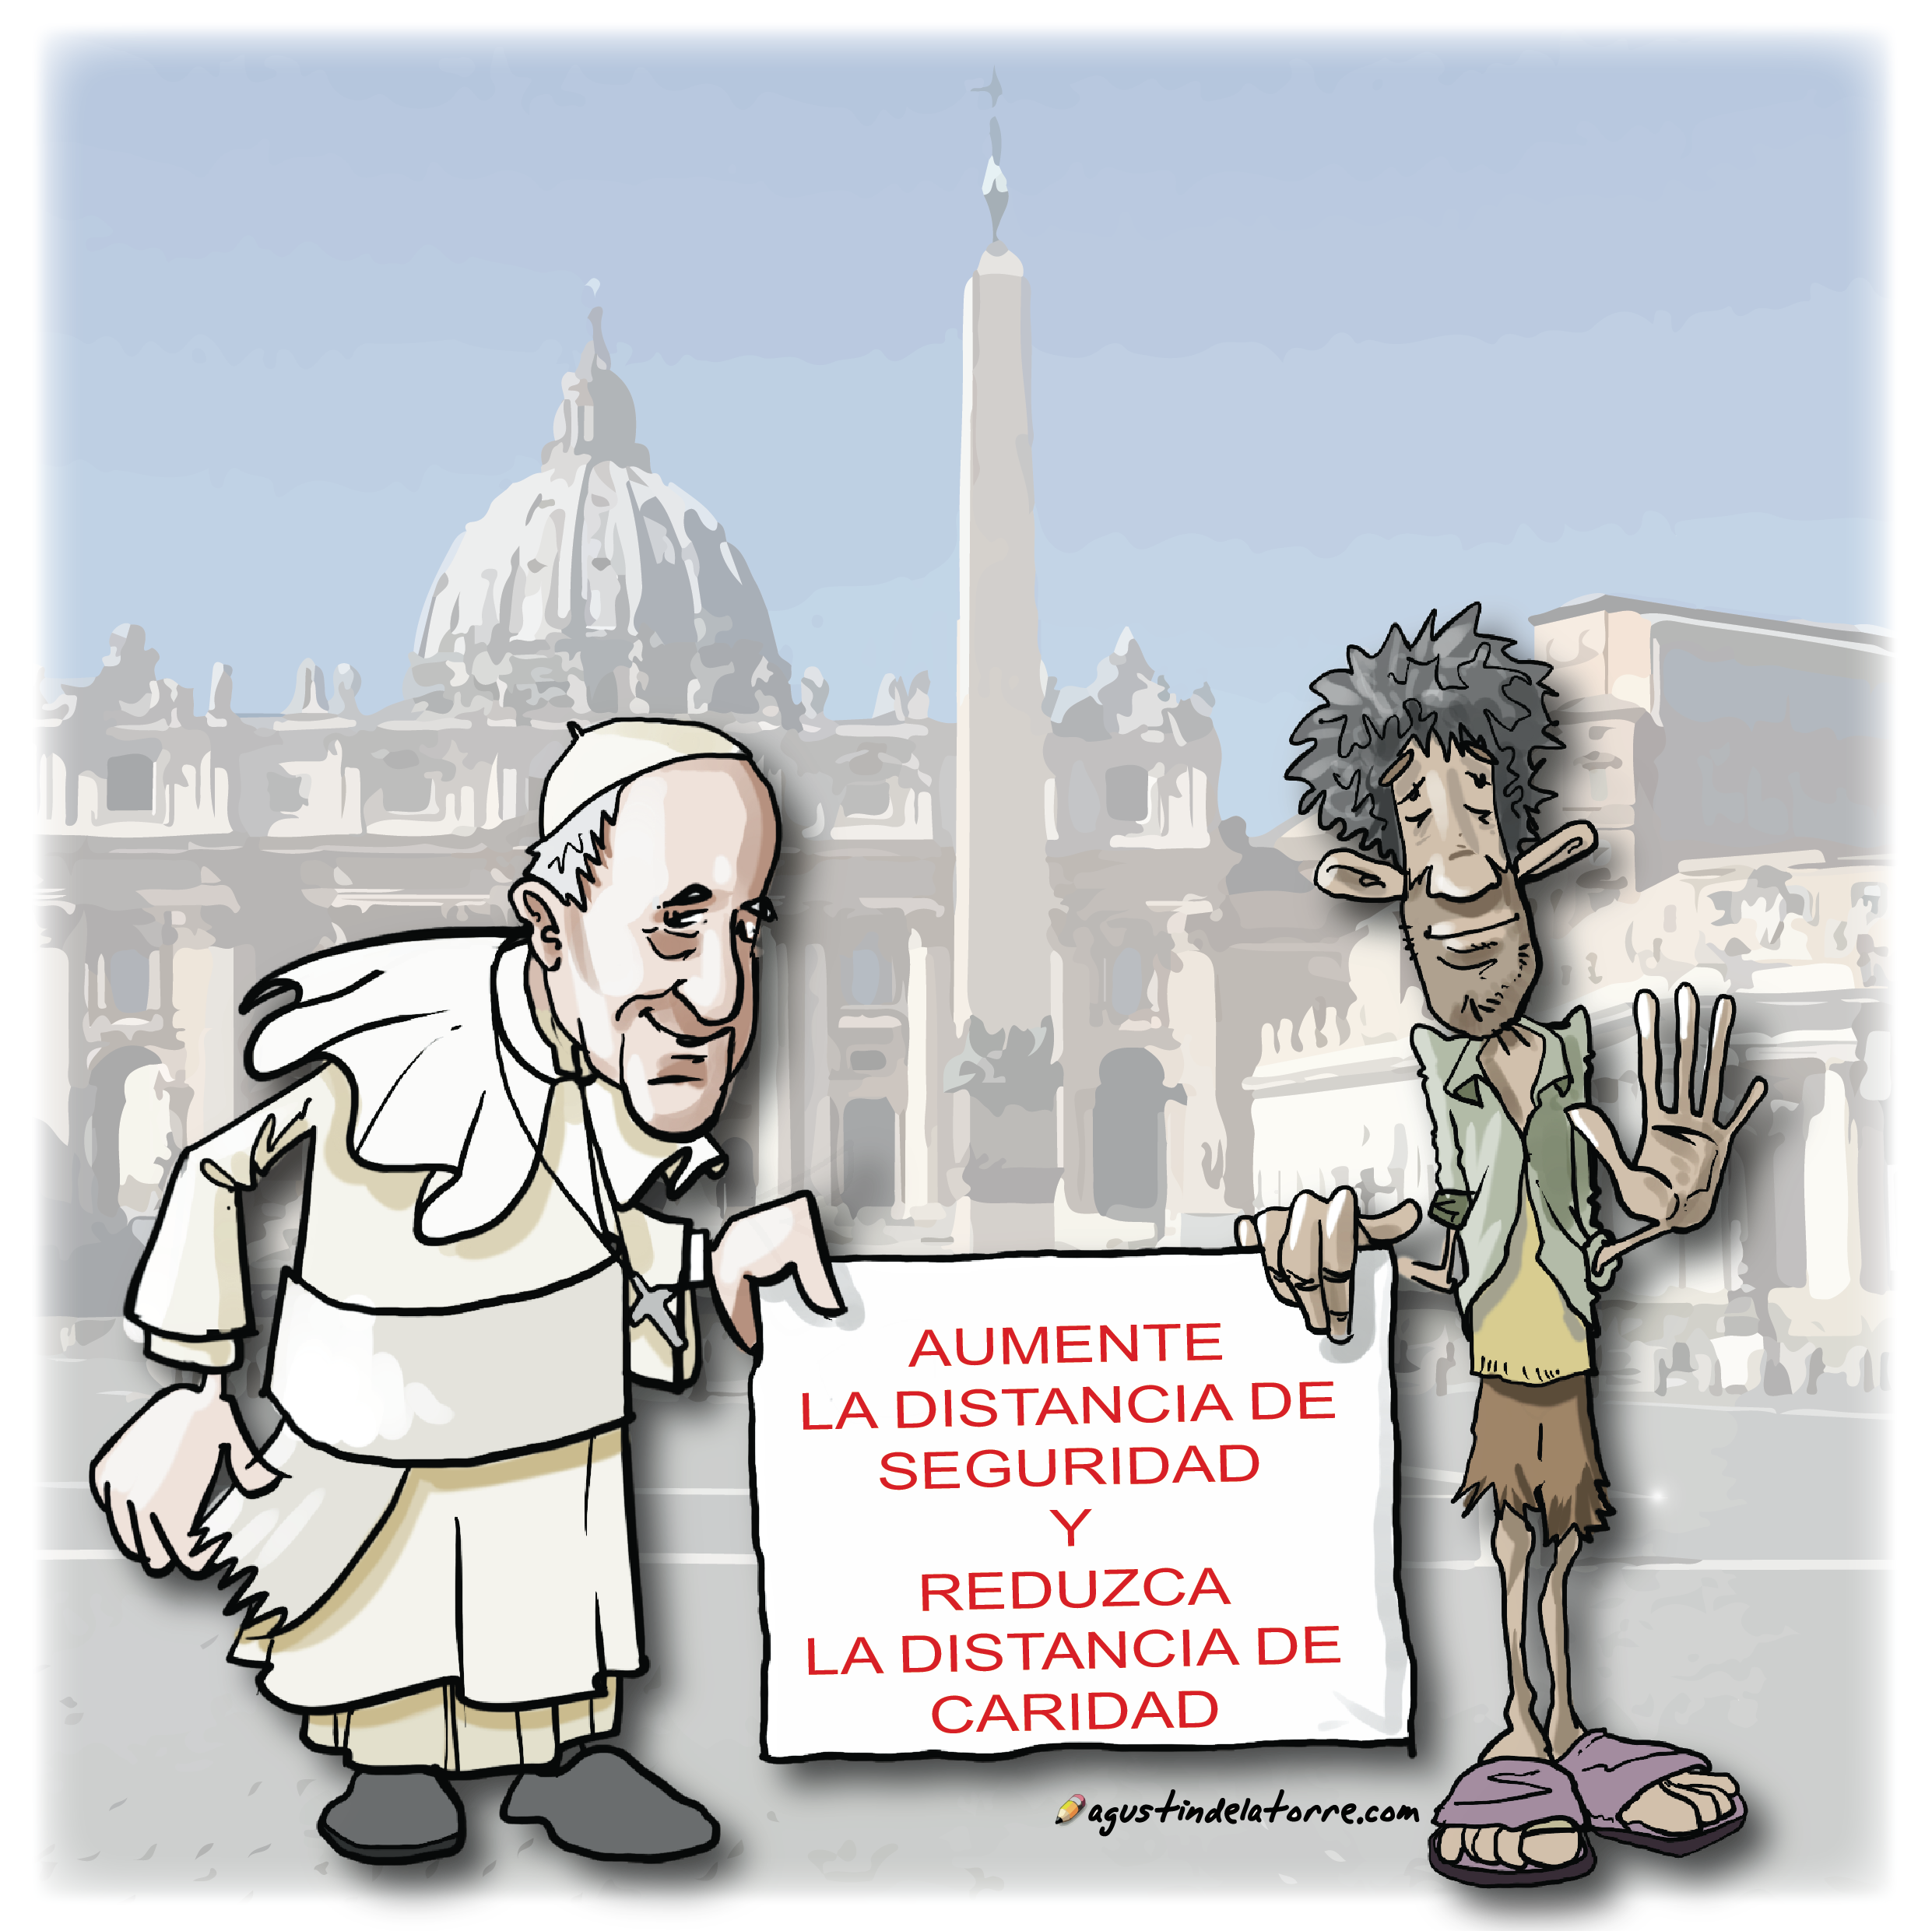 El Papa de los pobres